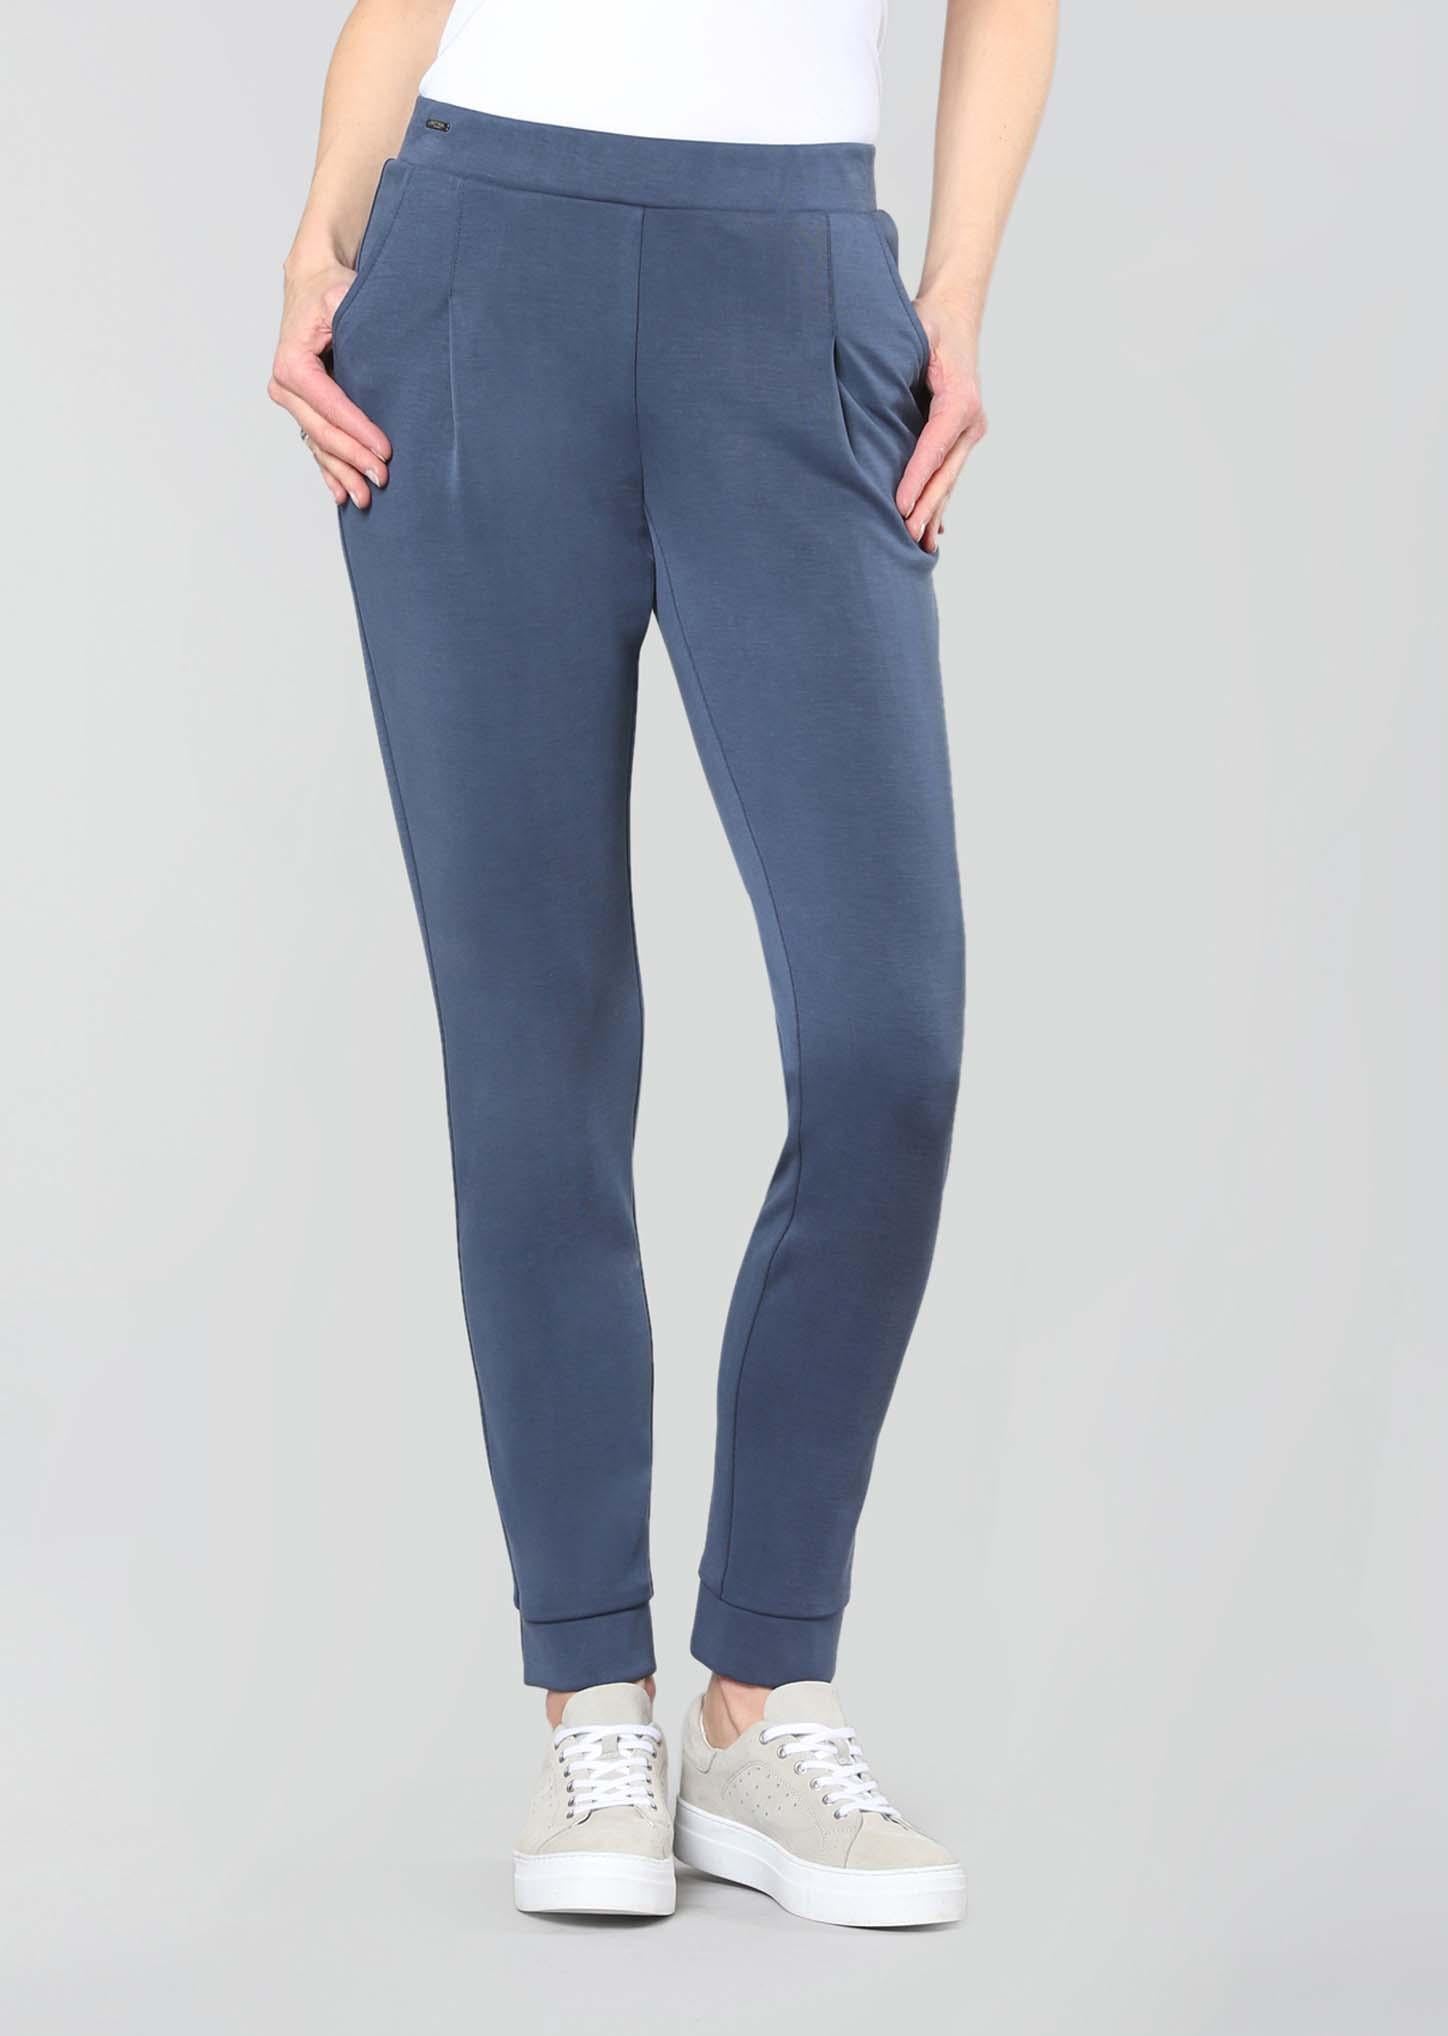 Lisette L. Leisure Luna Knit Slim Ankle Pants, Style 817674 – Dream Pants